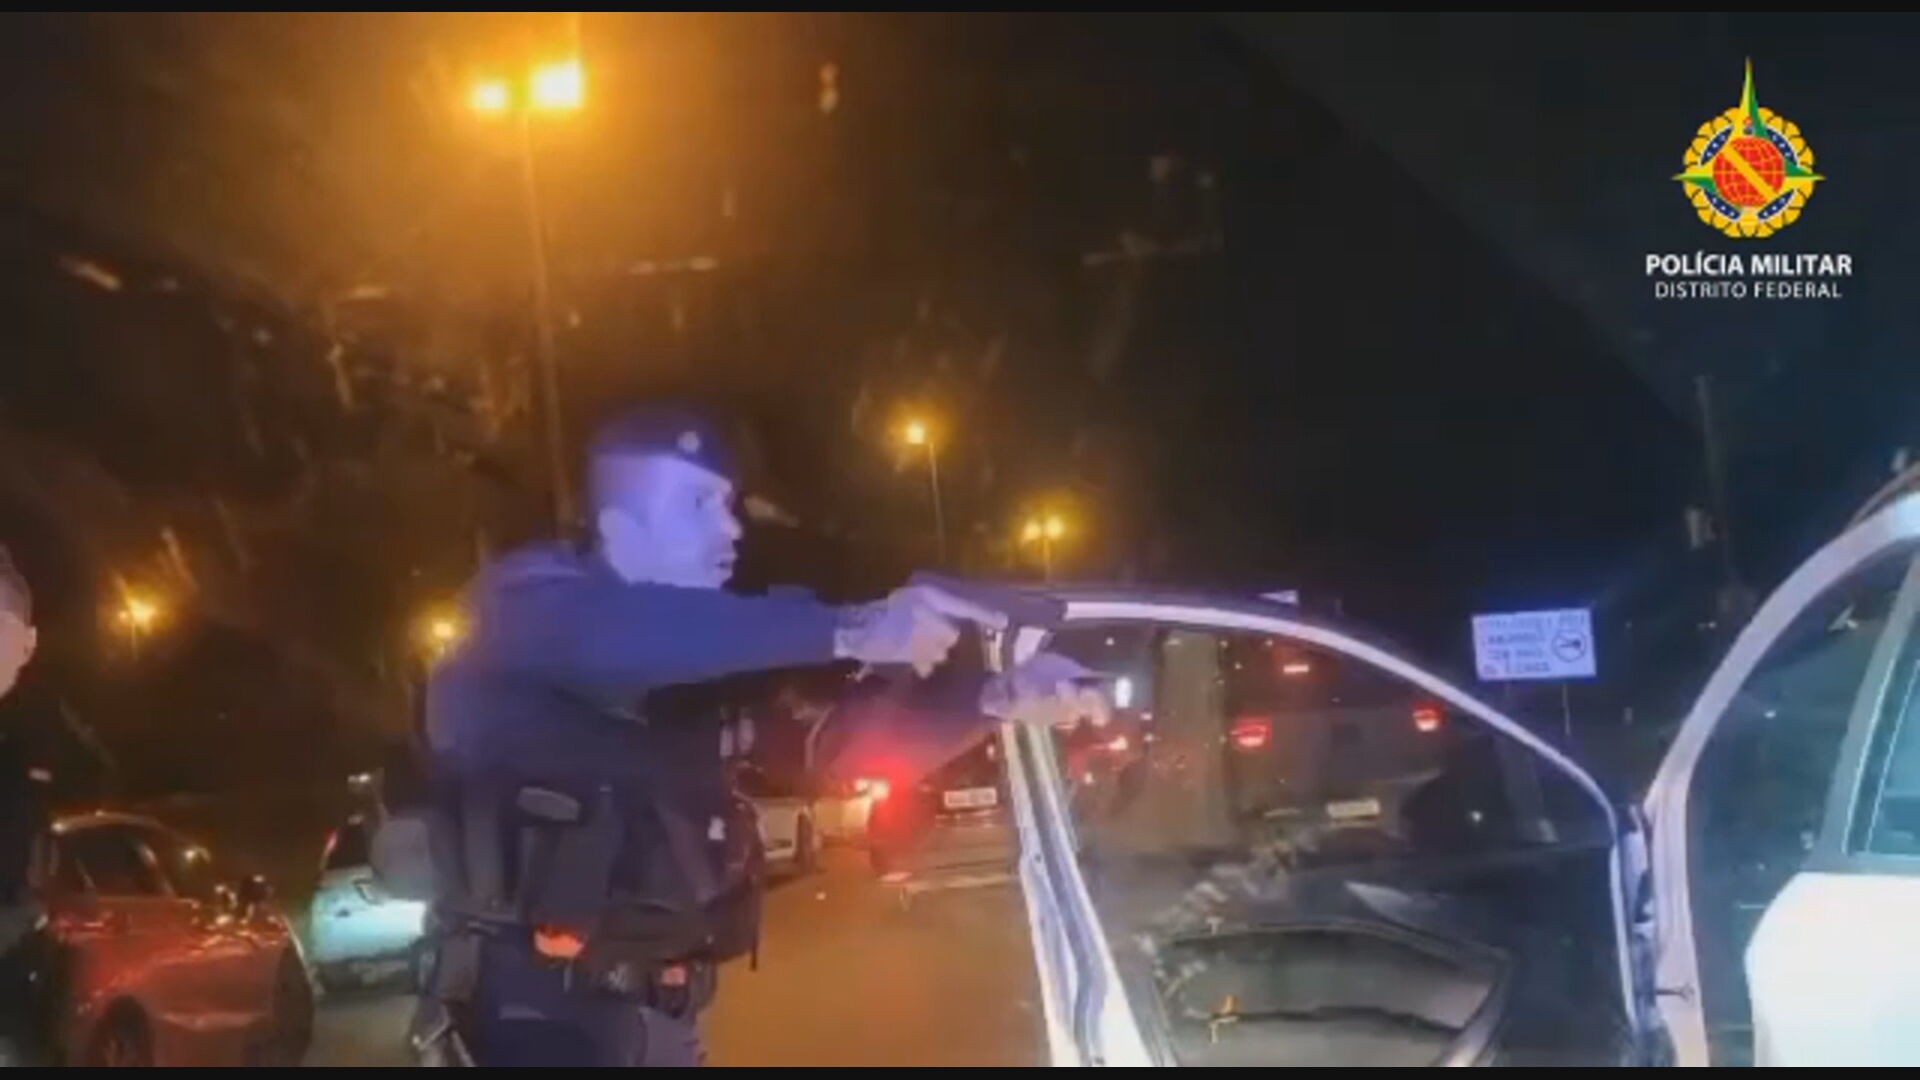 VÍDEO: suspeitos de roubar carro são detidos após perseguição policial, no DF